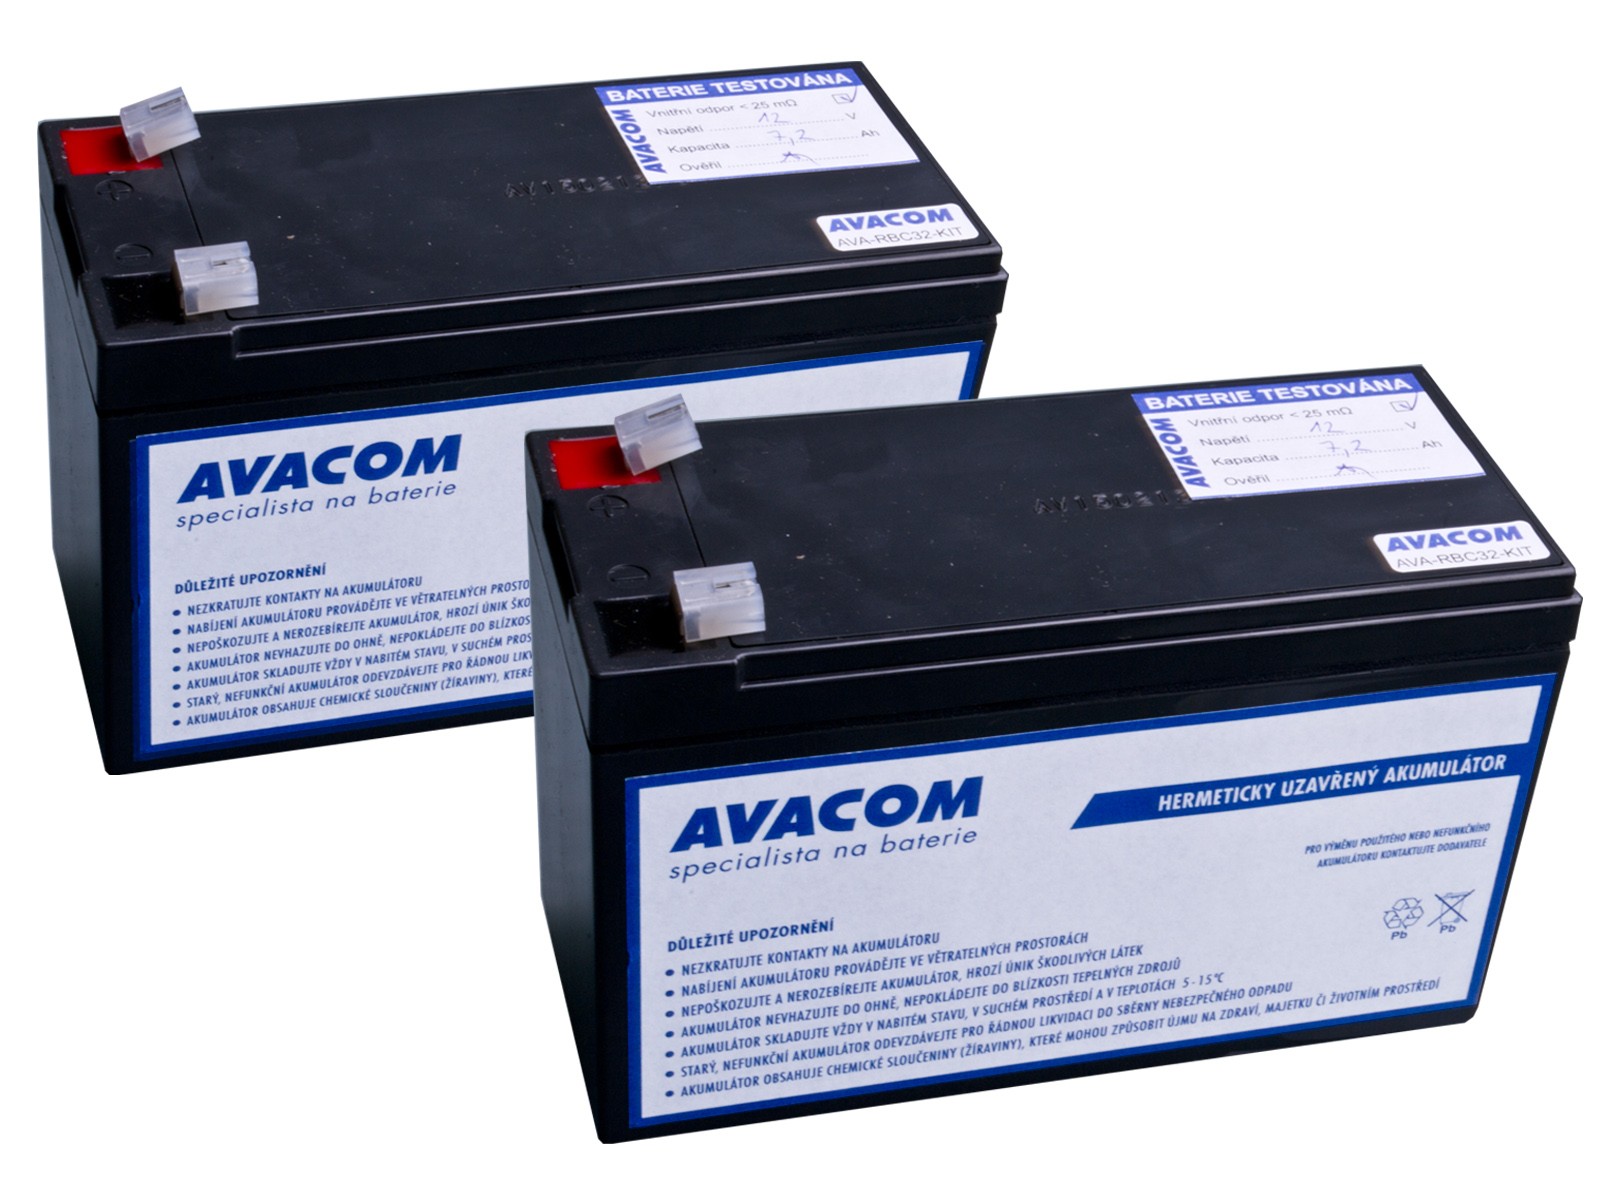 AVACOM náhrada za RBC32 - bateriový kit pro renovaci RBC32 (2ks baterií)